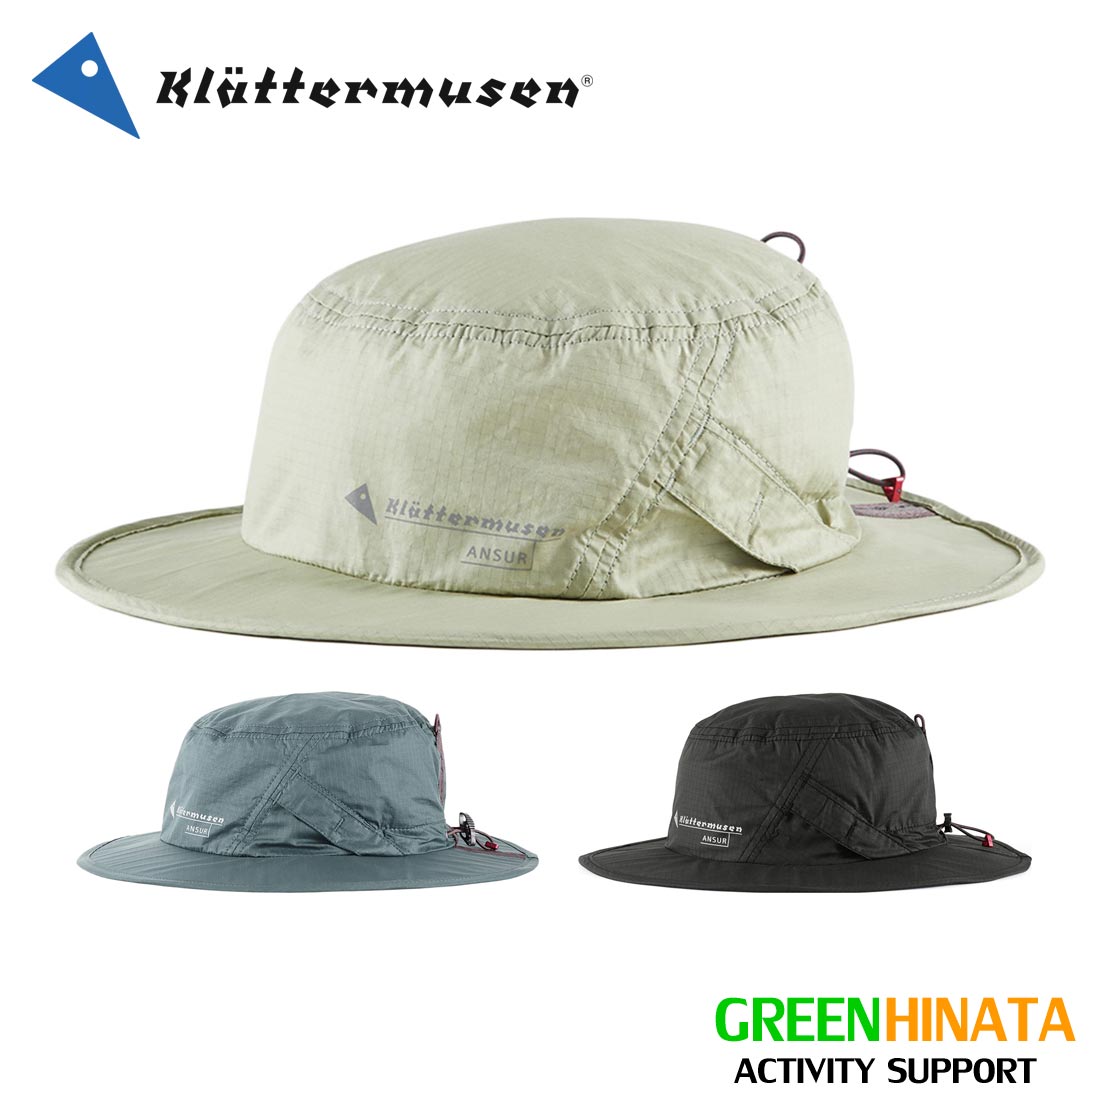 【国内正規品】 クレッタルムーセン アンサー ハイキング ハット 帽子 KLATTERMUSEN Ansur Hiking Hat